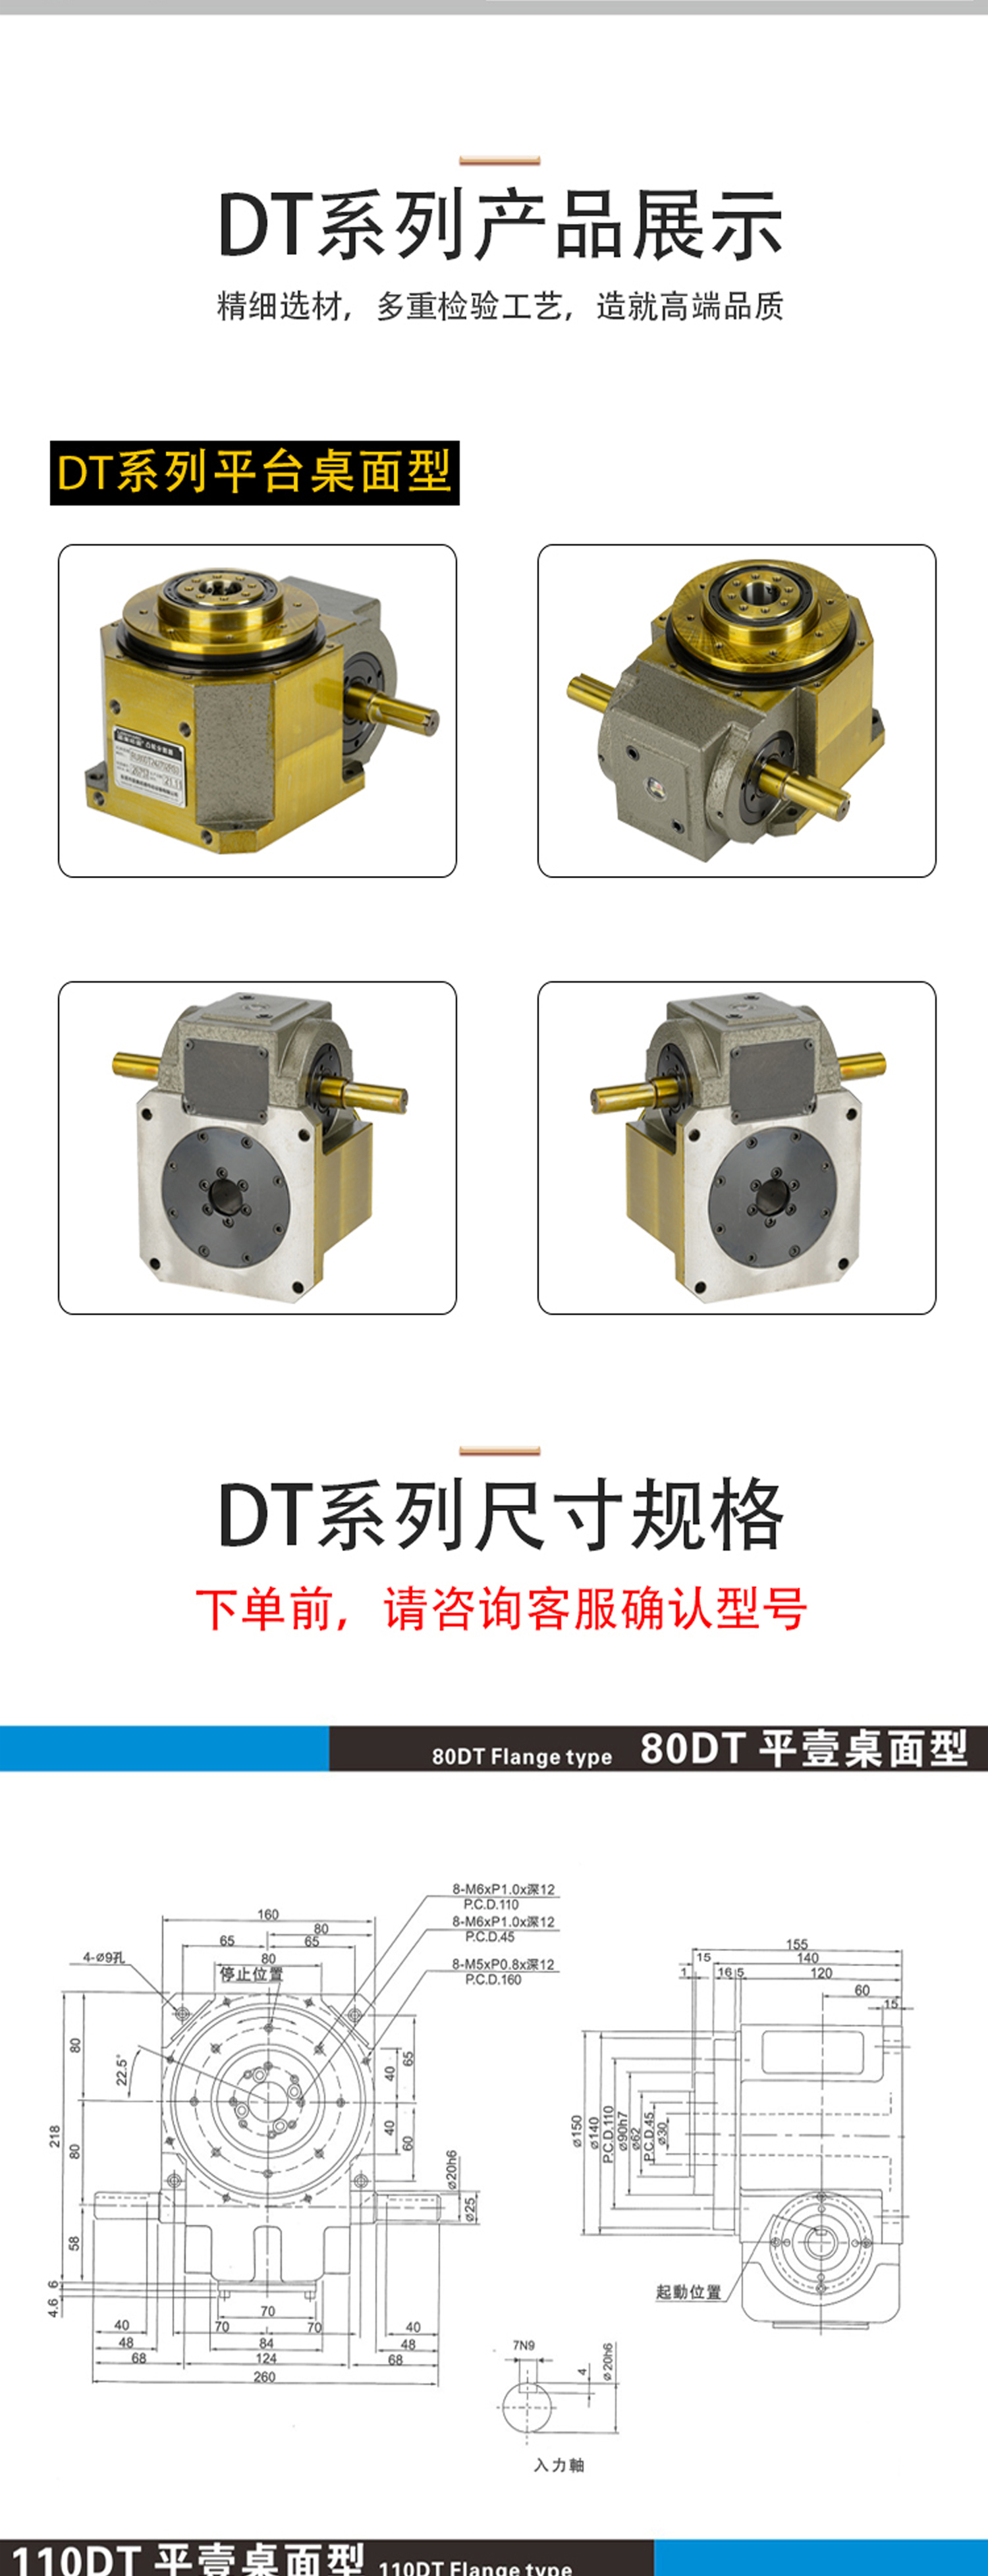 ADDKA凸轮分割器DT系列.jpg